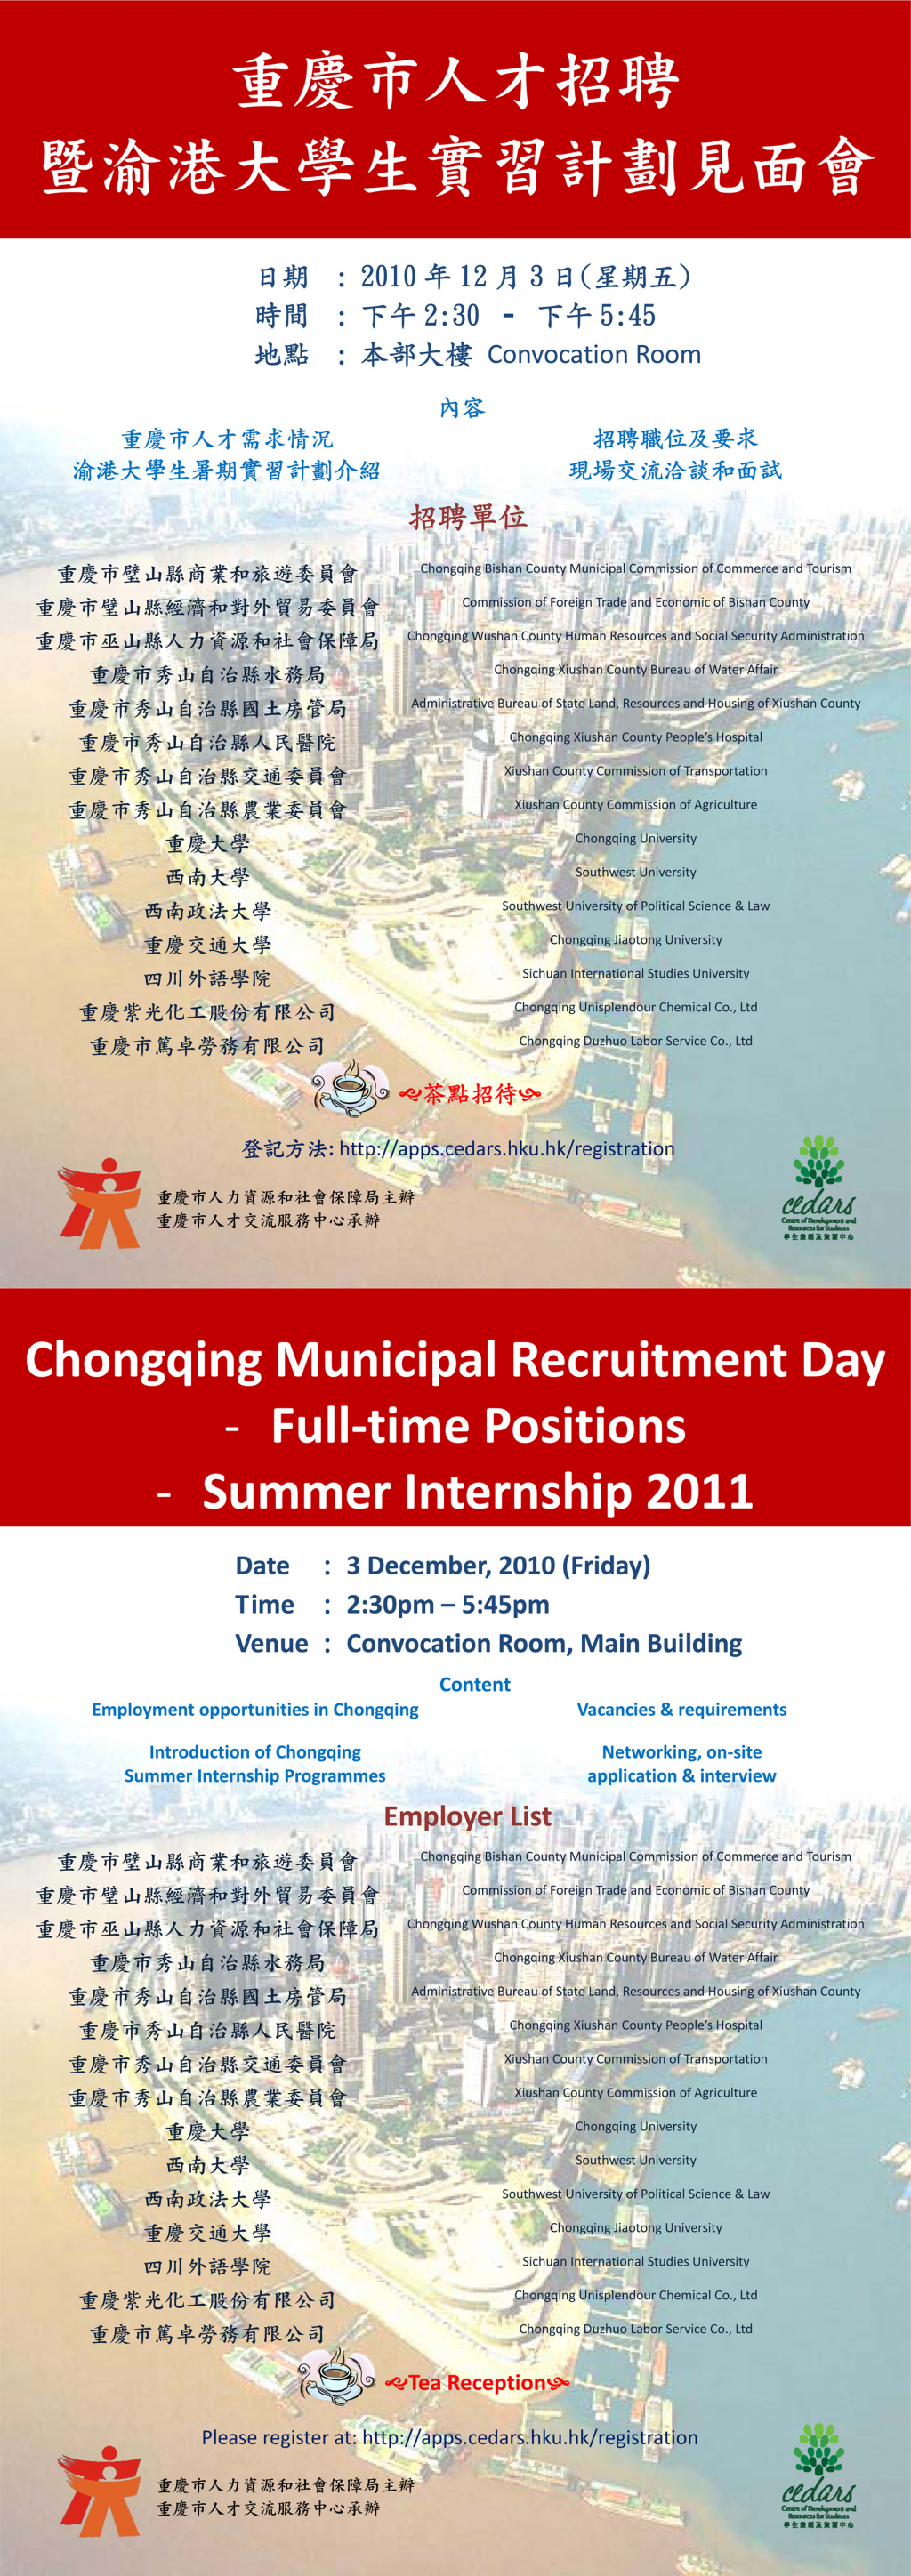 Chongqing Municipal Recruitment Day on 3 Dec